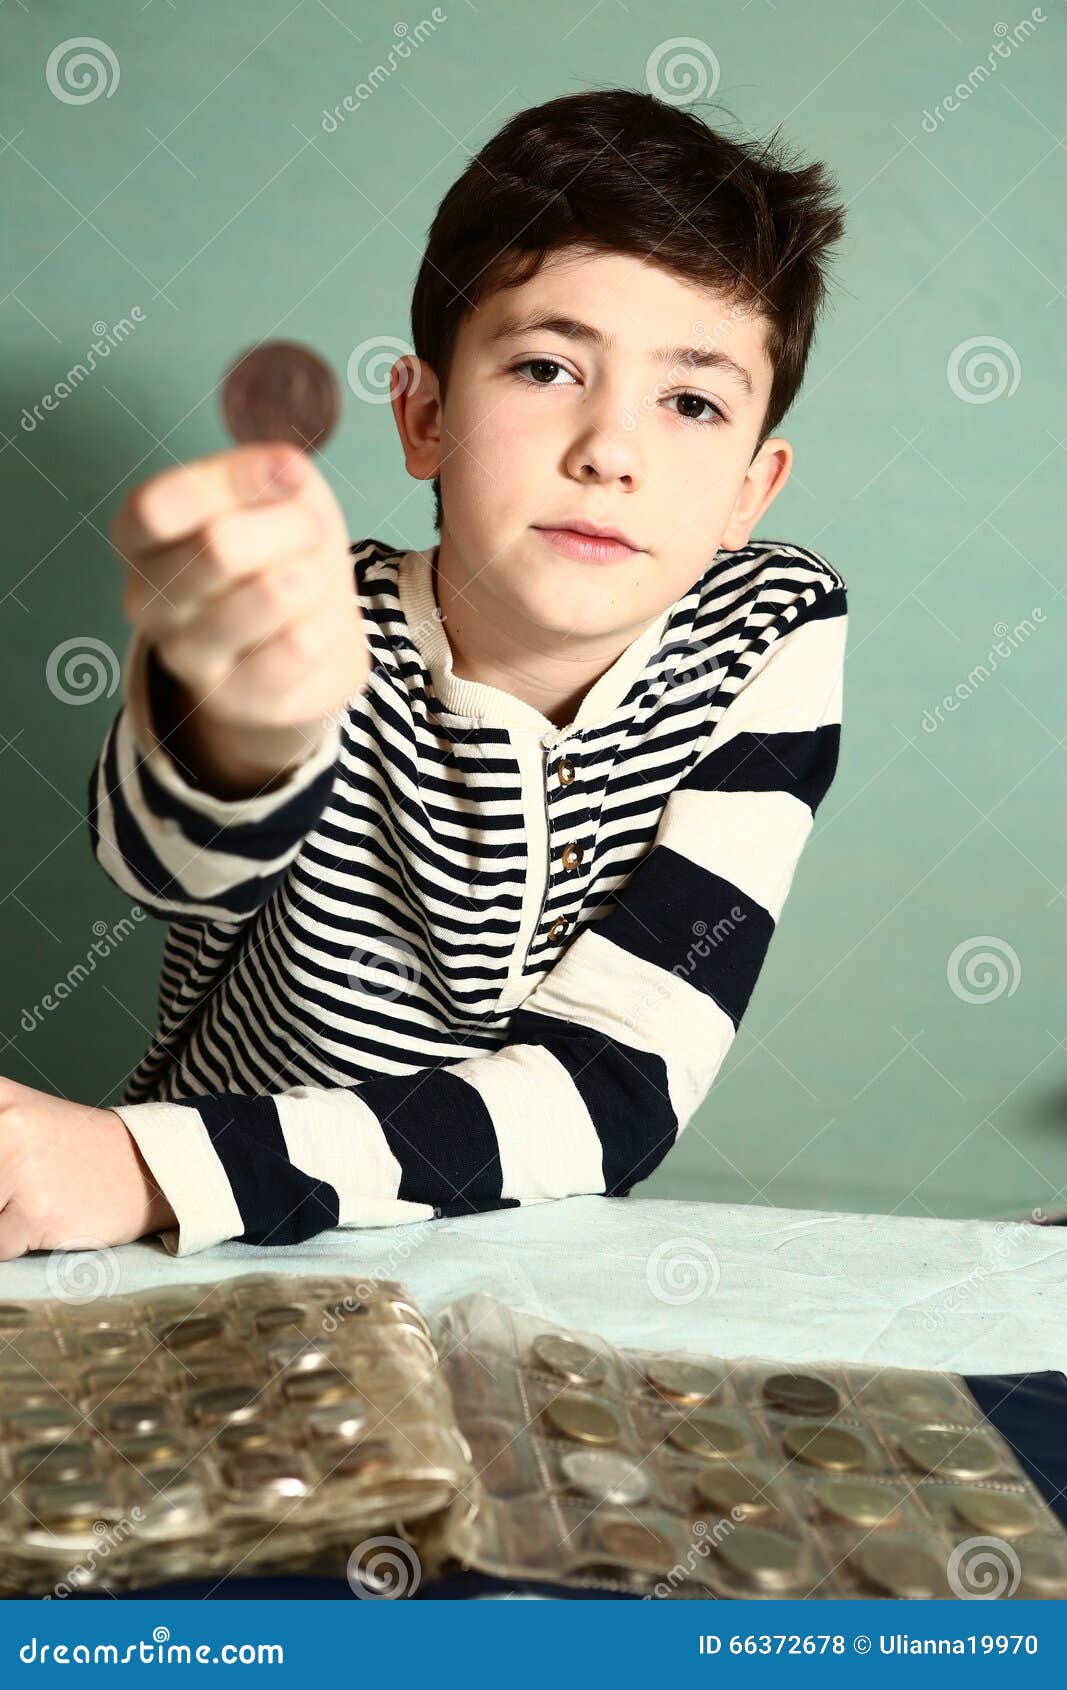 boy preteen numismatic collector